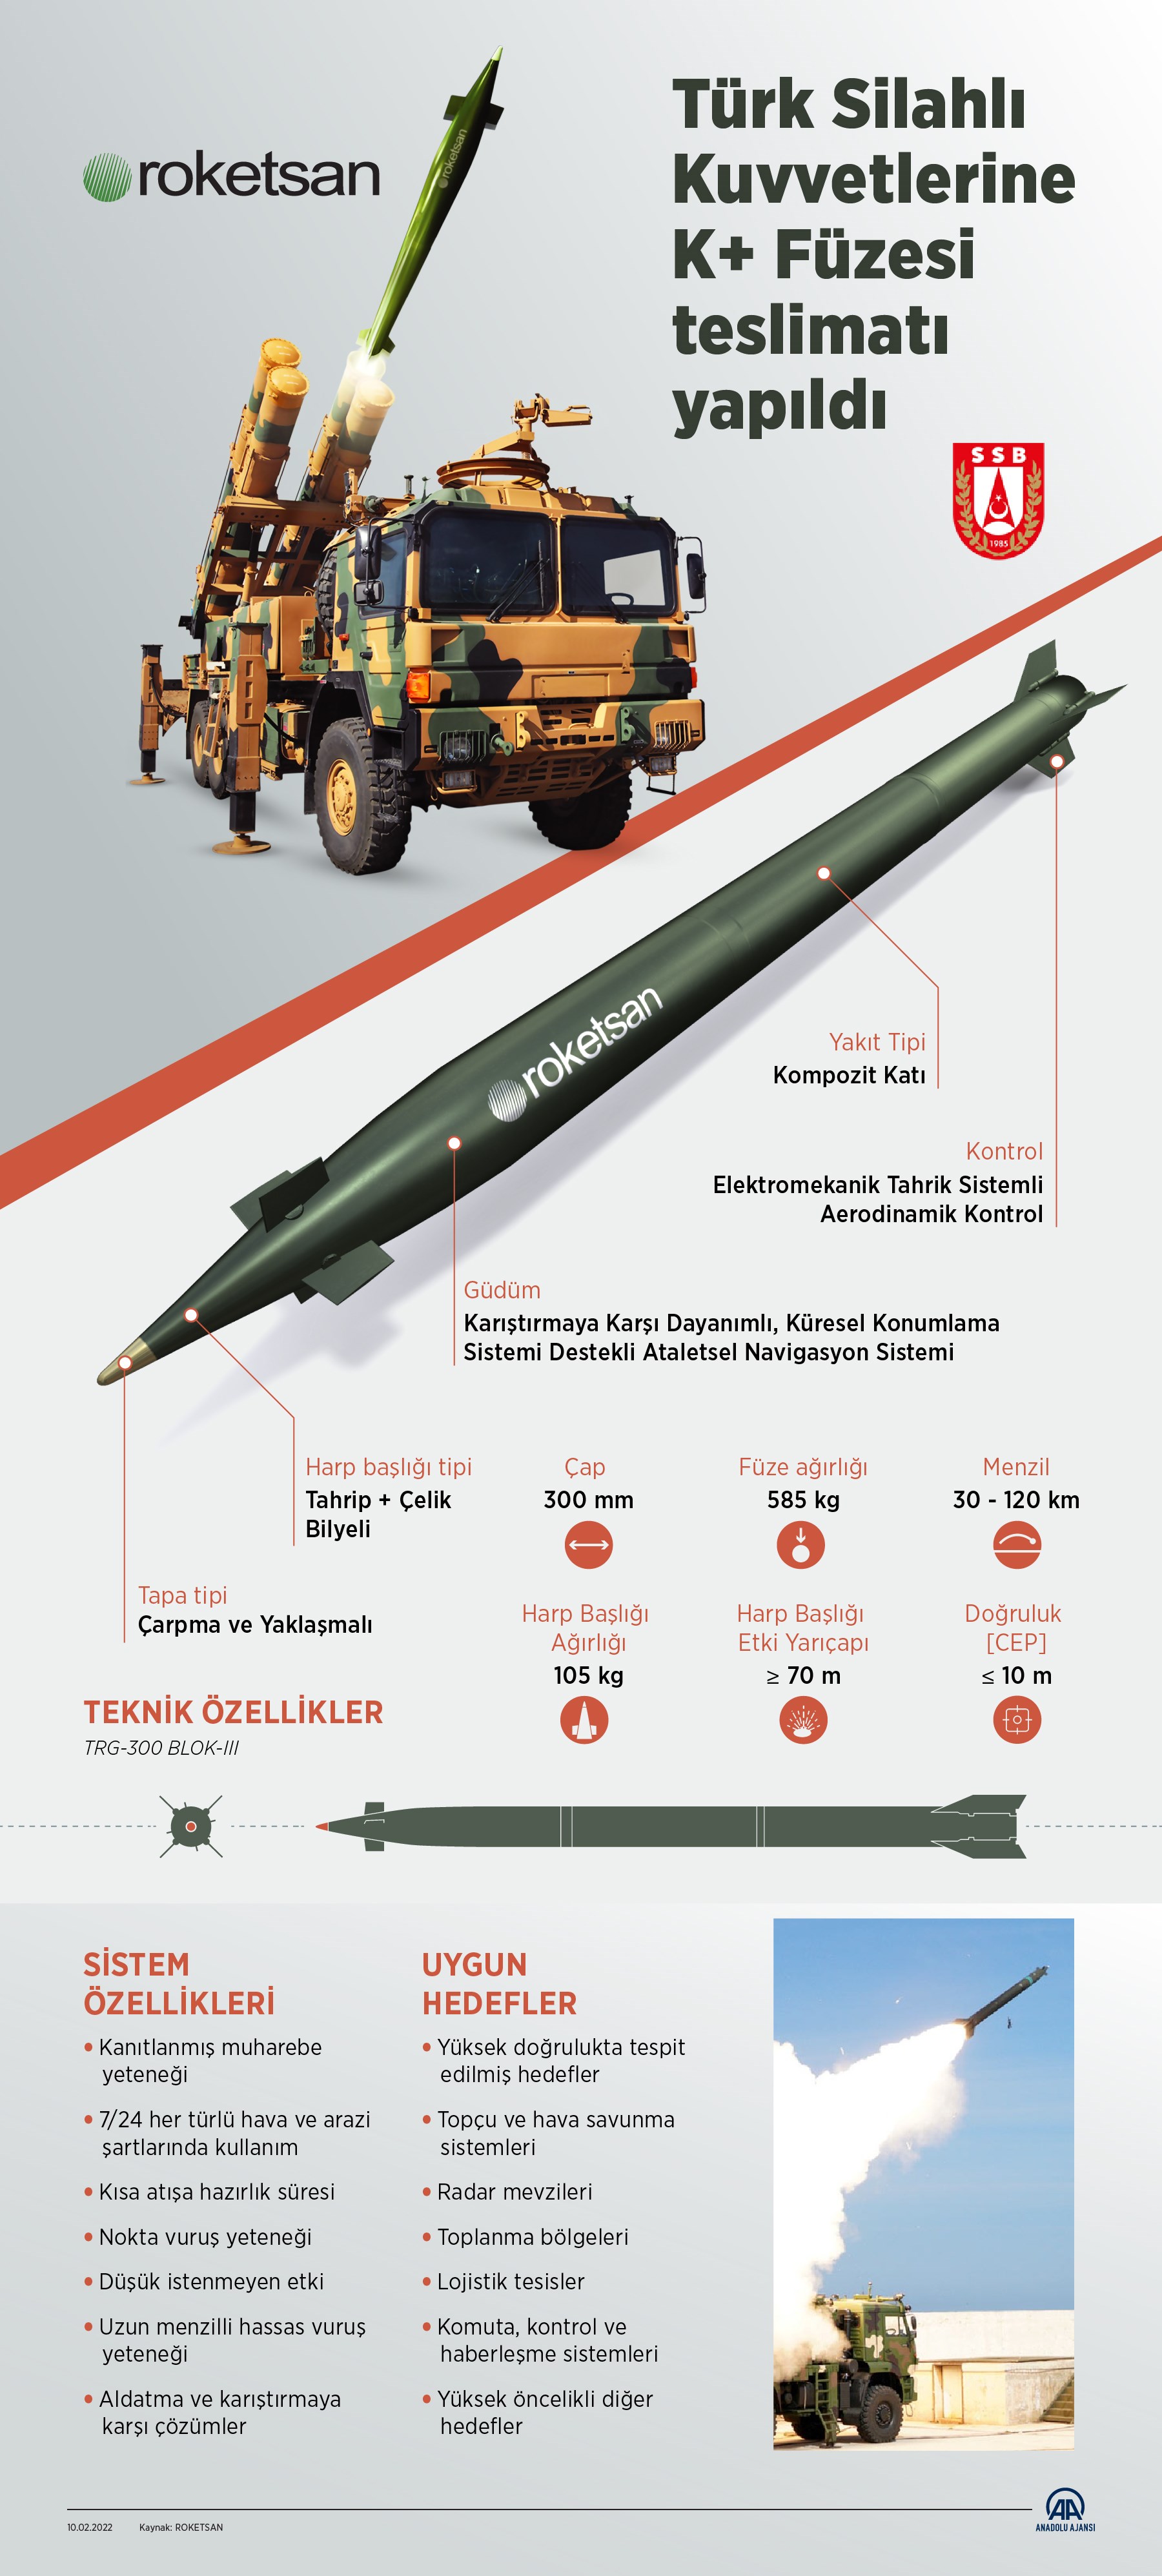 Roketsan K+ Füzesi (TRG-300 Blok-III) teslimatı yapıldı